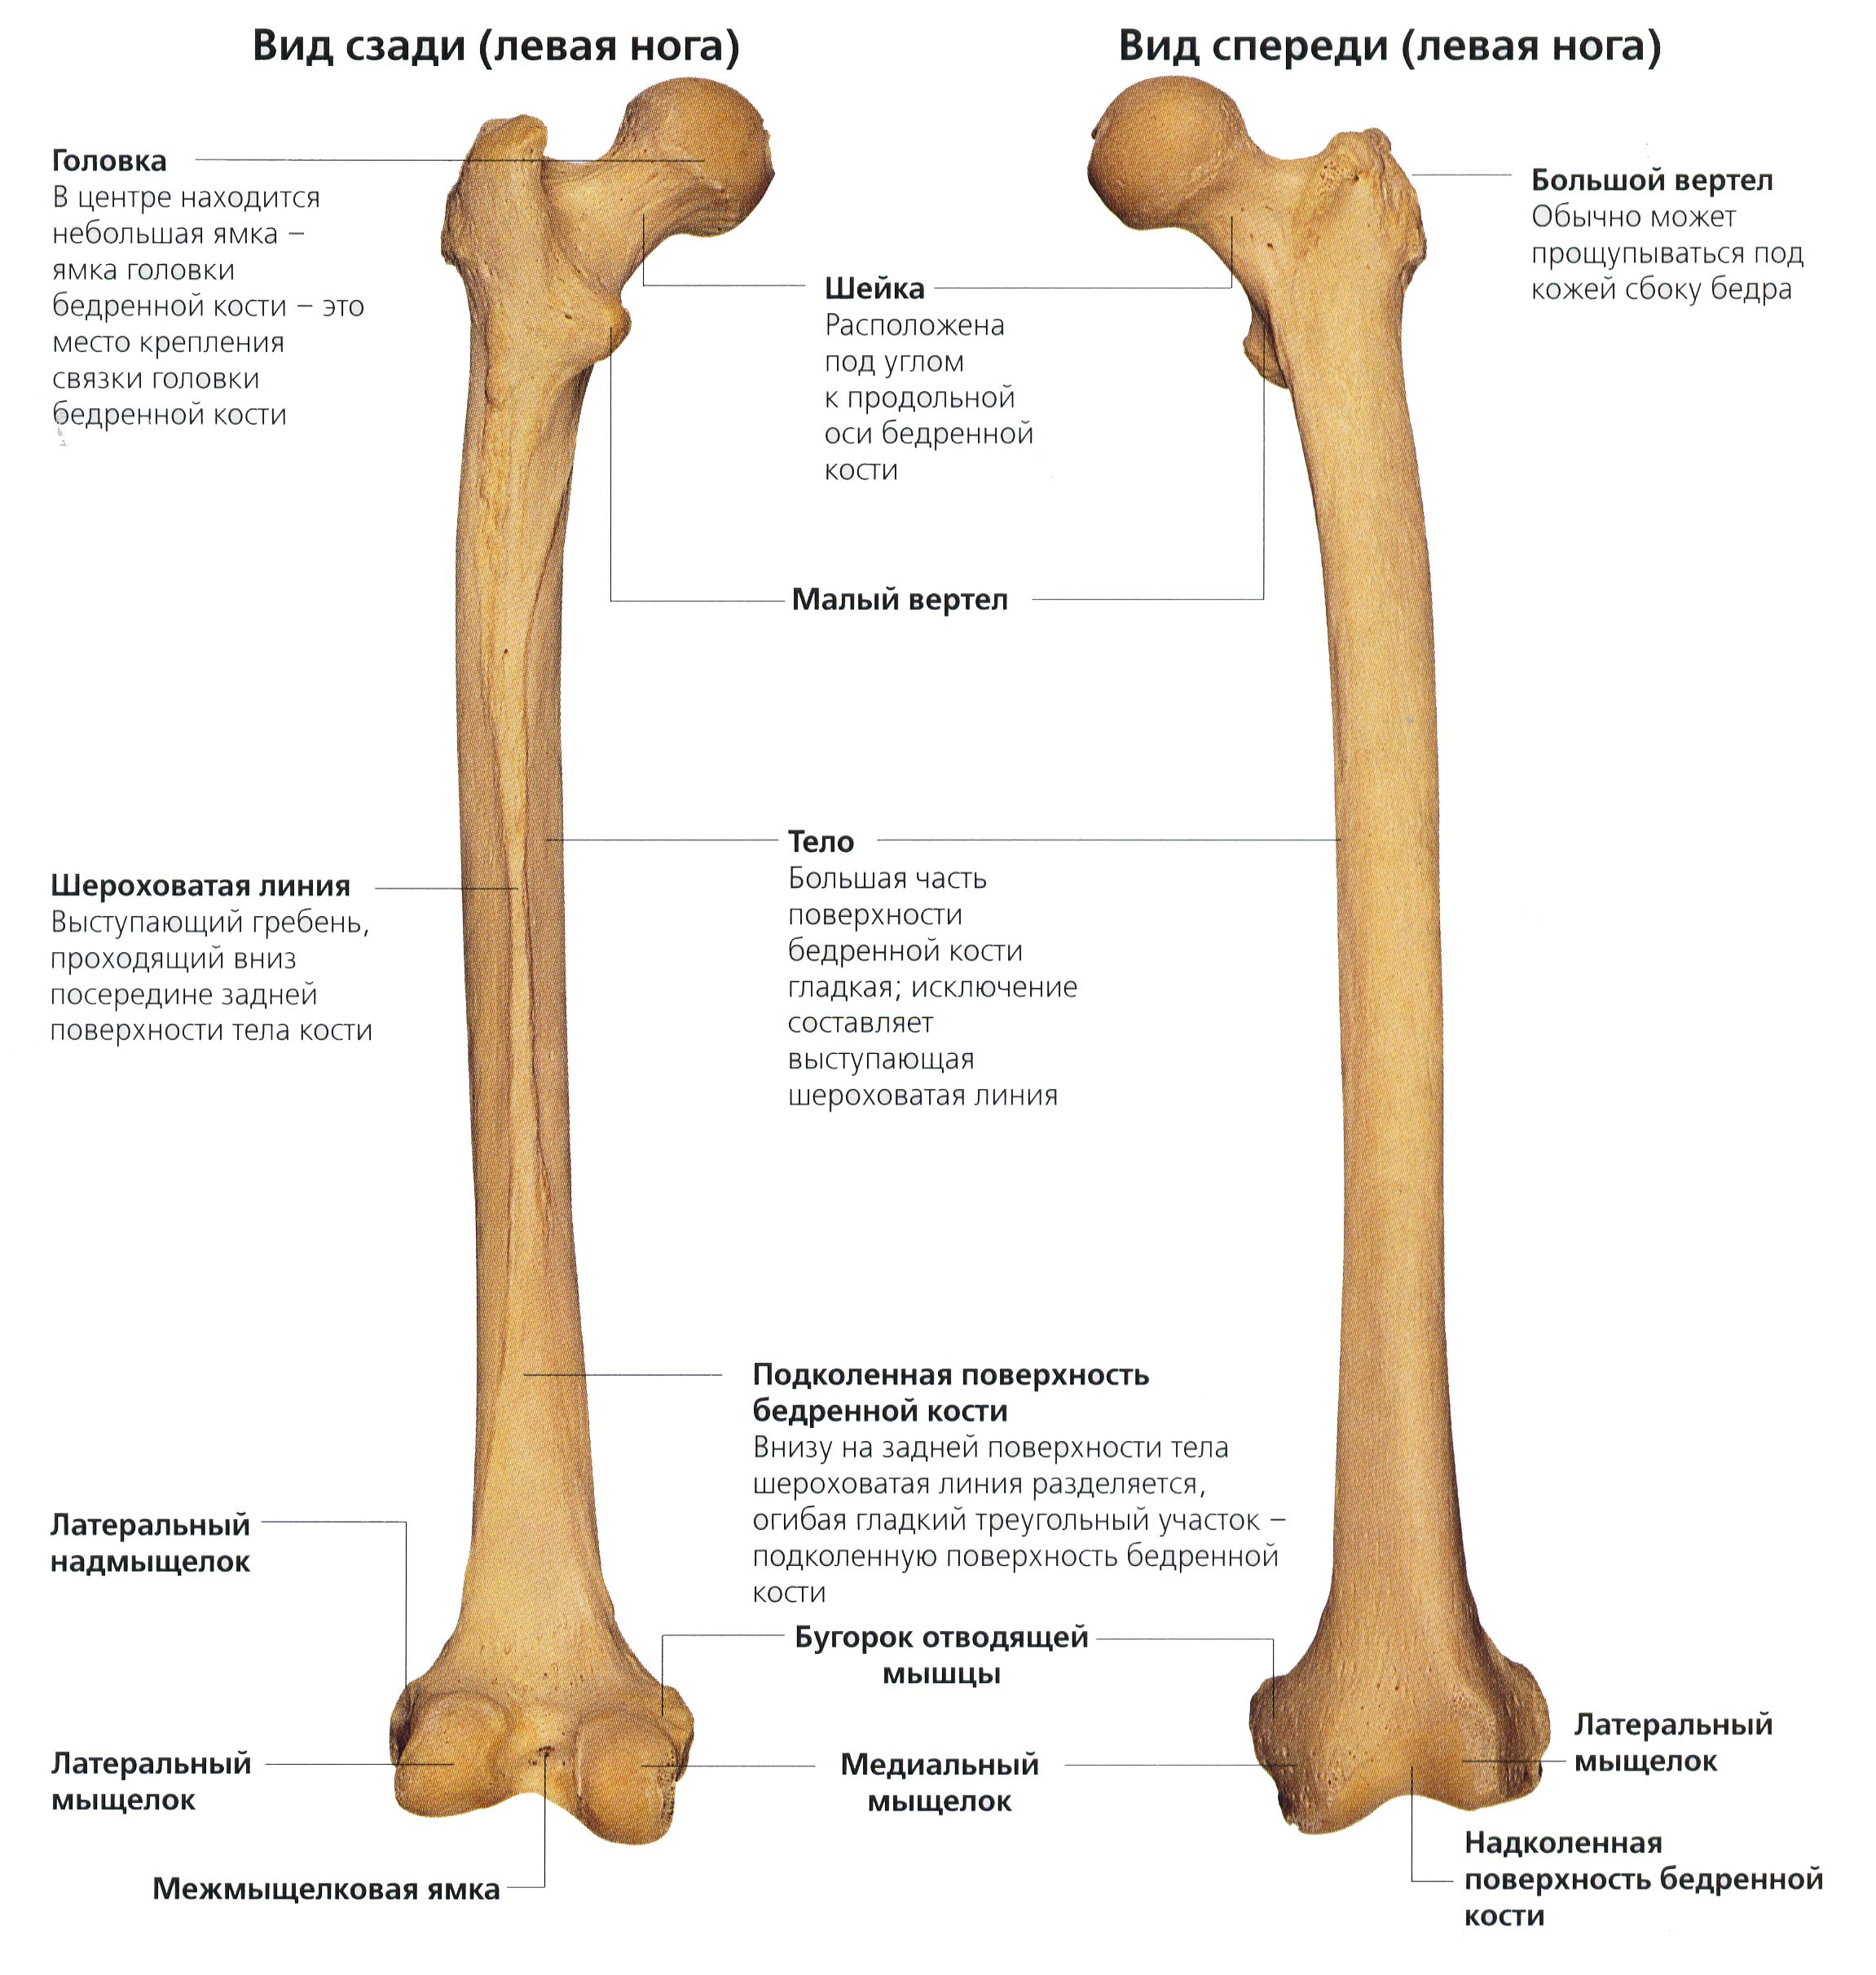 Назовите длинные кости. Шероховатая линия бедренной кости. Строение бедренной кости человека. Малый бугорок бедренной кости. Анатомические образования бедренной кости.